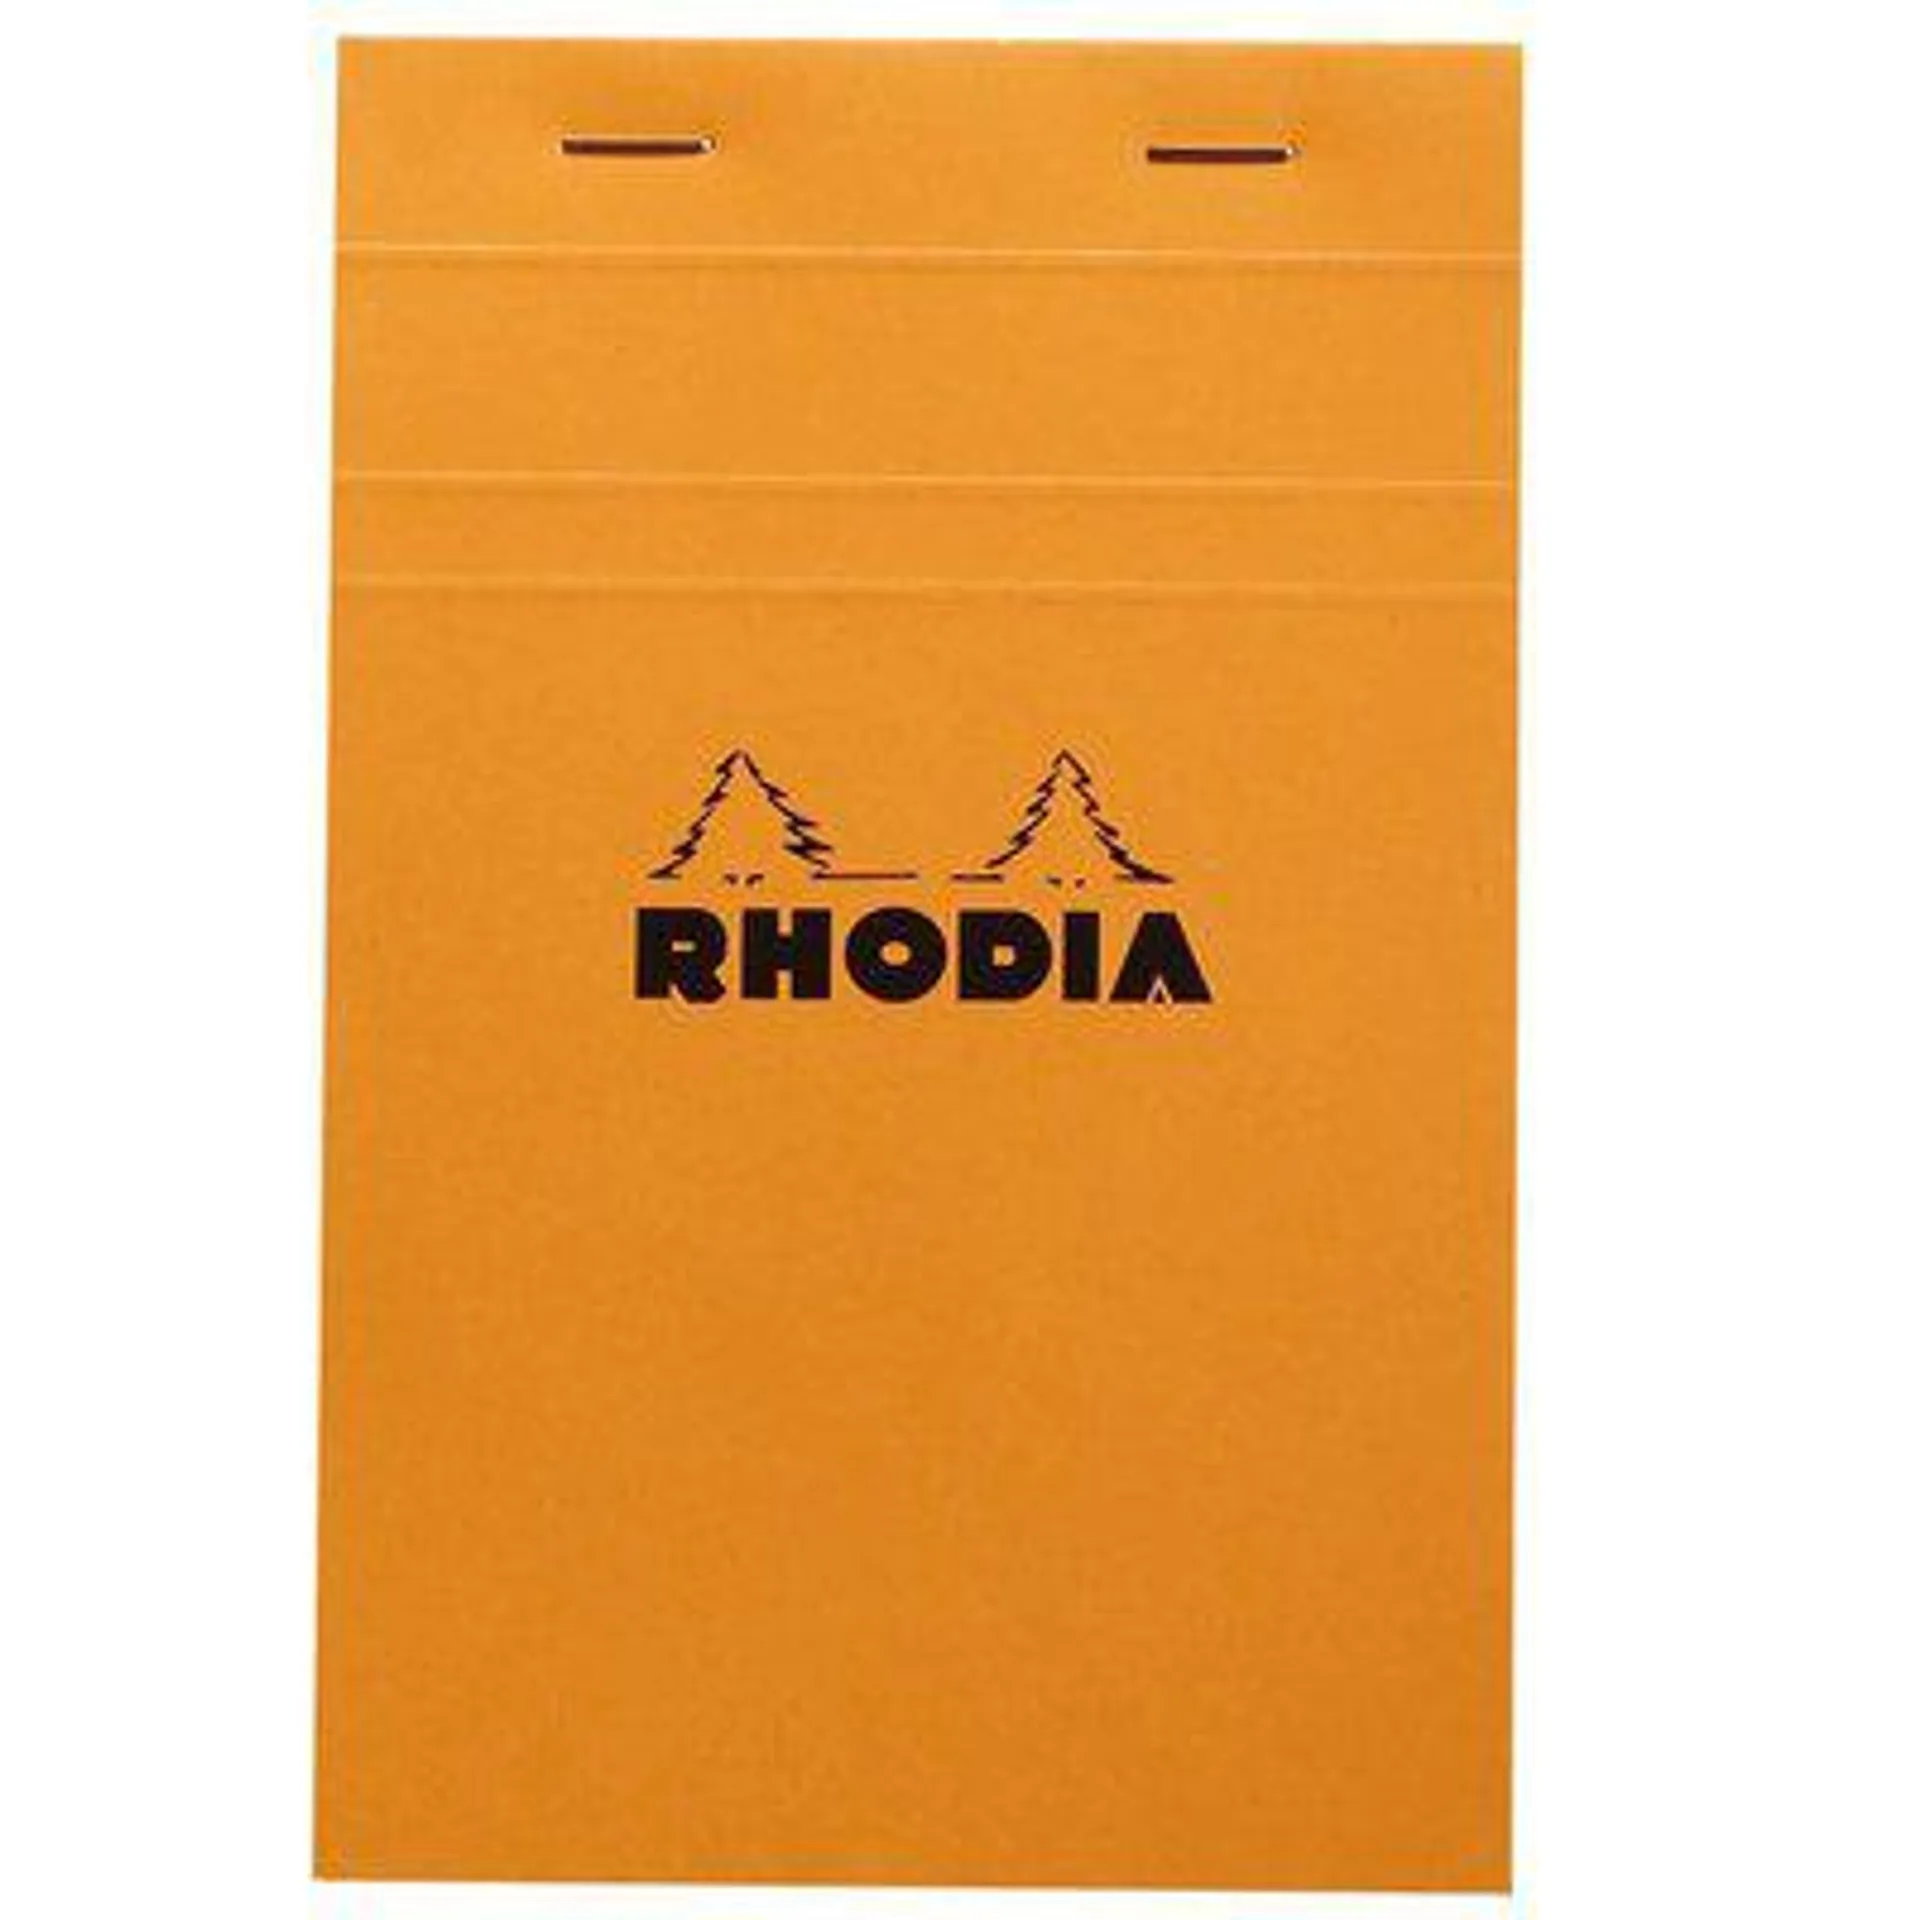 Rhodia Portakal Zımbalı Kareli 5X5 80 Yaprak 80 Gr 11 x 17 cm Bloknot Turuncu 14200